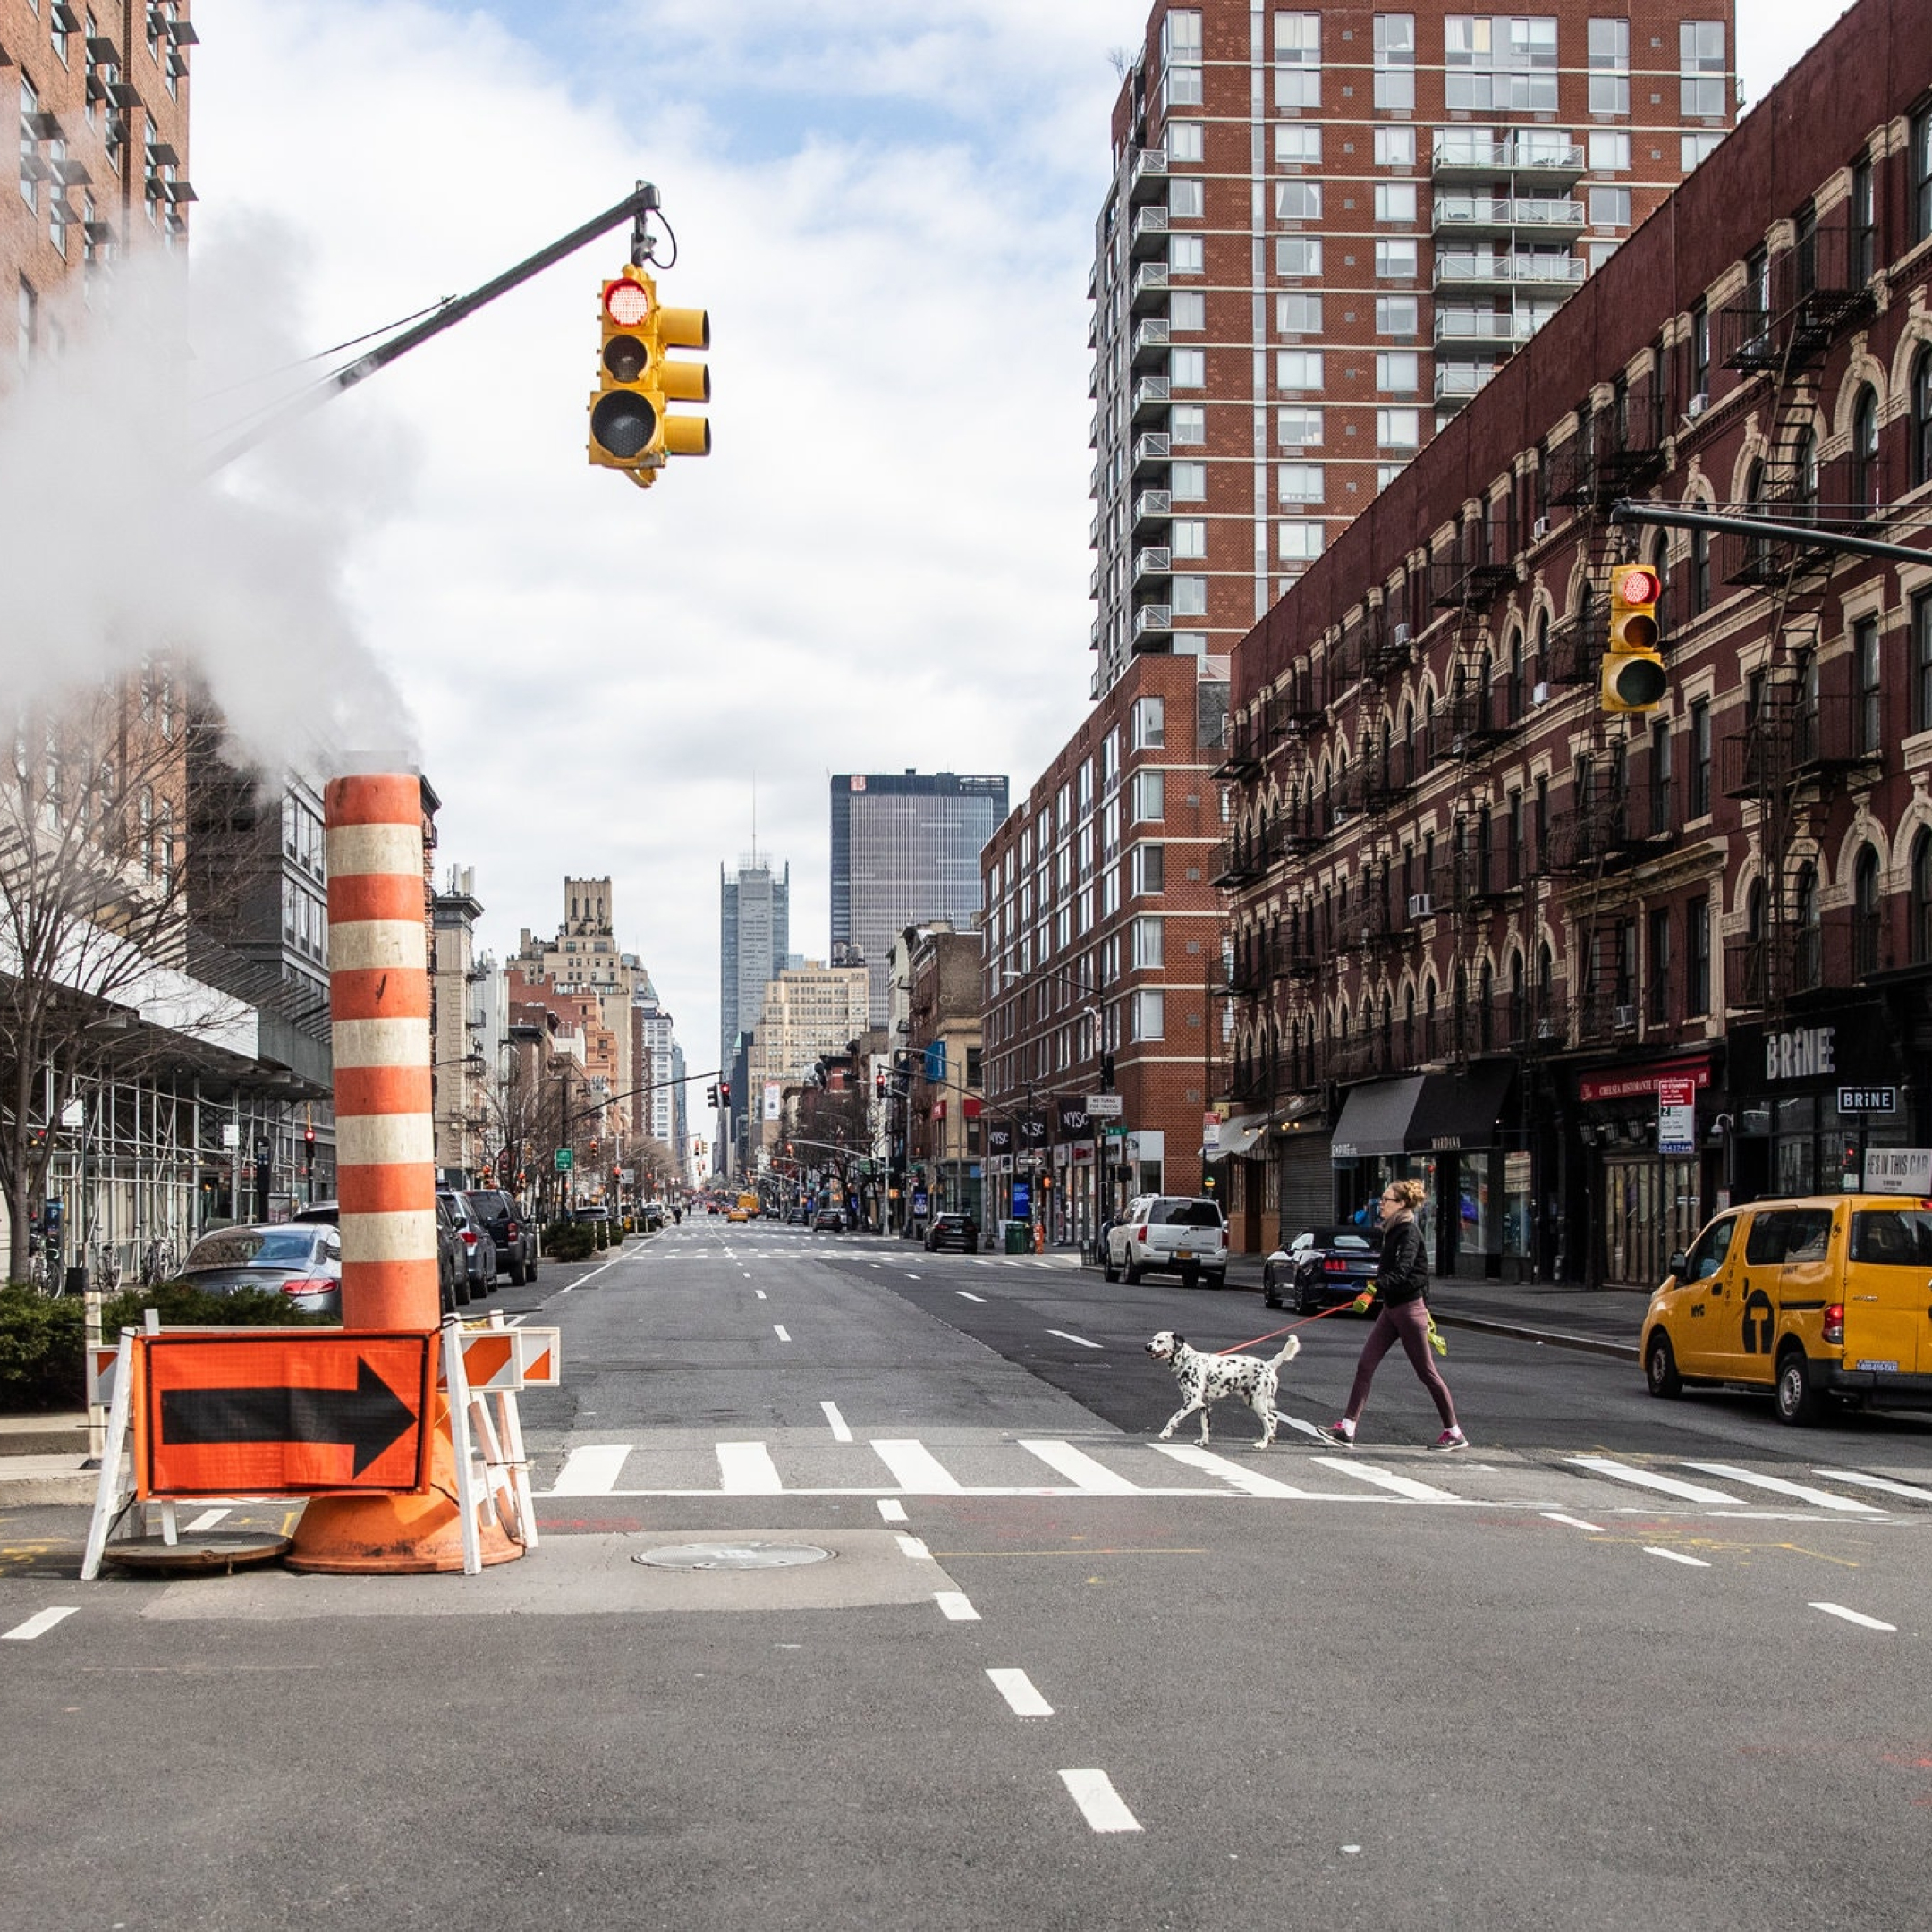 В первое время, когда количество заболевших резко возросло, на улицах Манхэттена стало удивительно тихо. Фото: Jeenah Moon / The New York Times